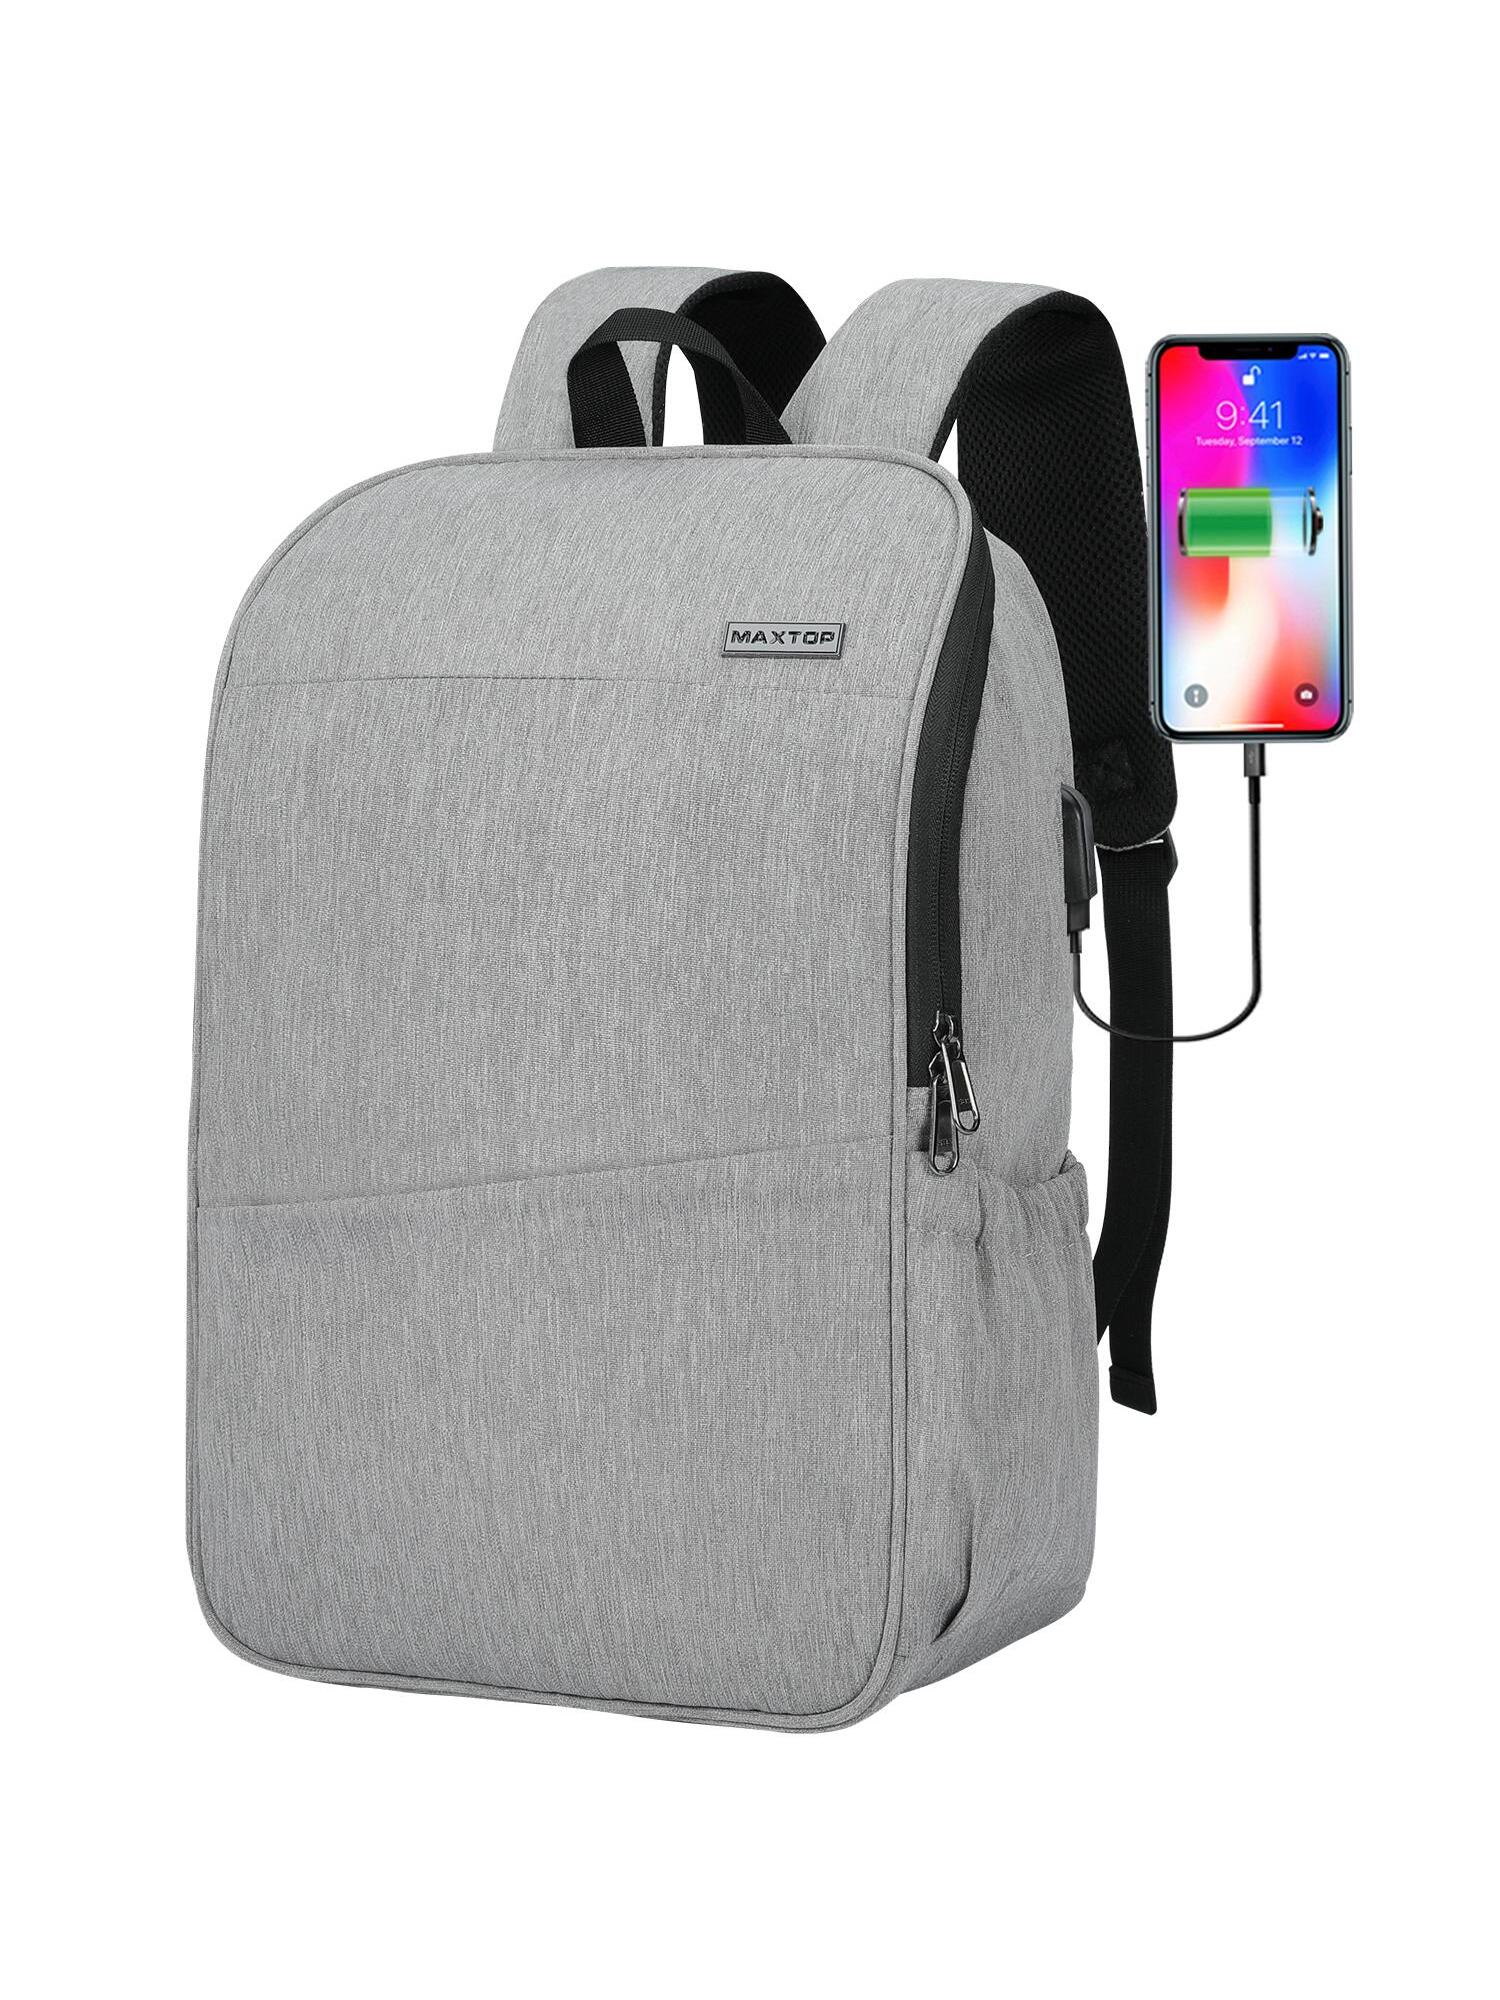 Рюкзак для ноутбука MAXTOP с глубоким хранилищем и USB-портом для зарядки Сумка для студенческого компьютера Подходит для 16-дюймового ноутбука, светло-серый